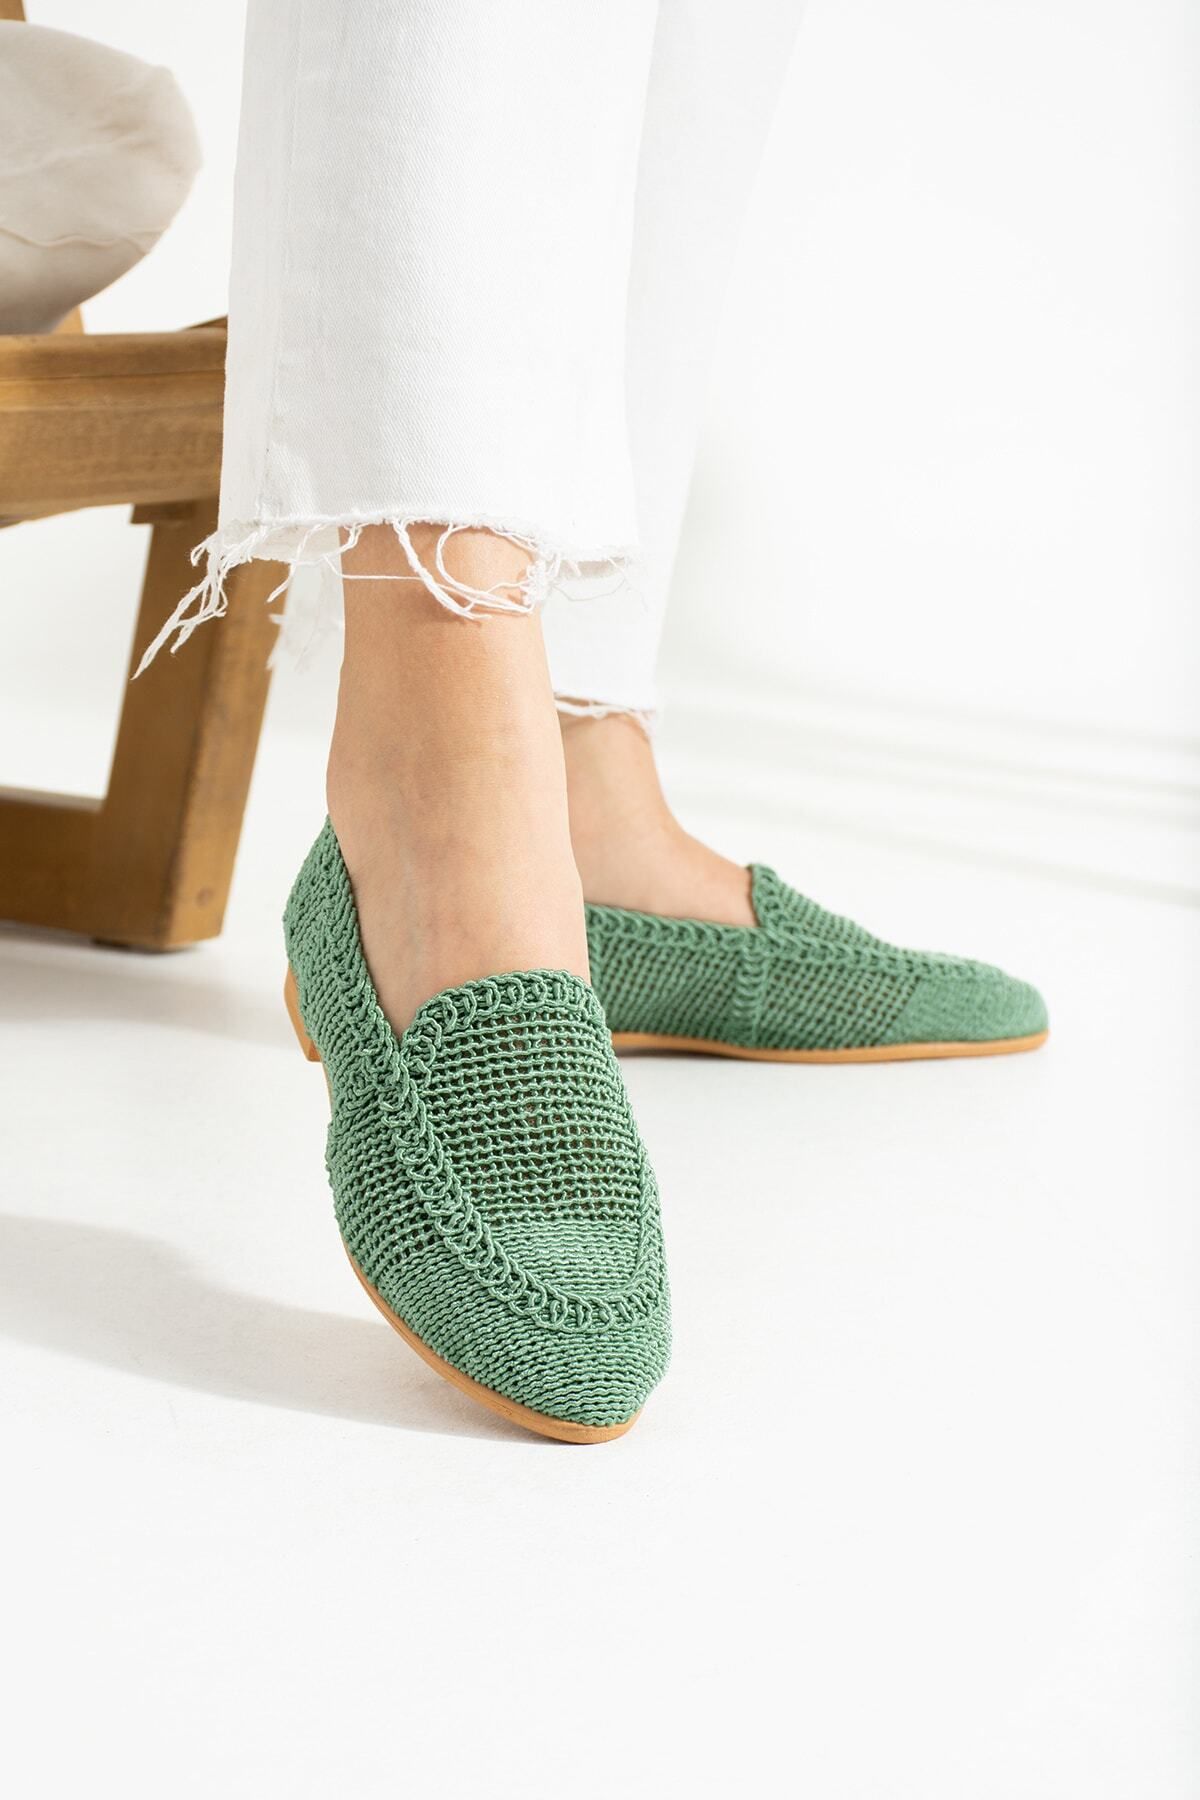 star shoes Yeşil Kadın Örme Babet Ayakkabı Kadın Ayakkabı